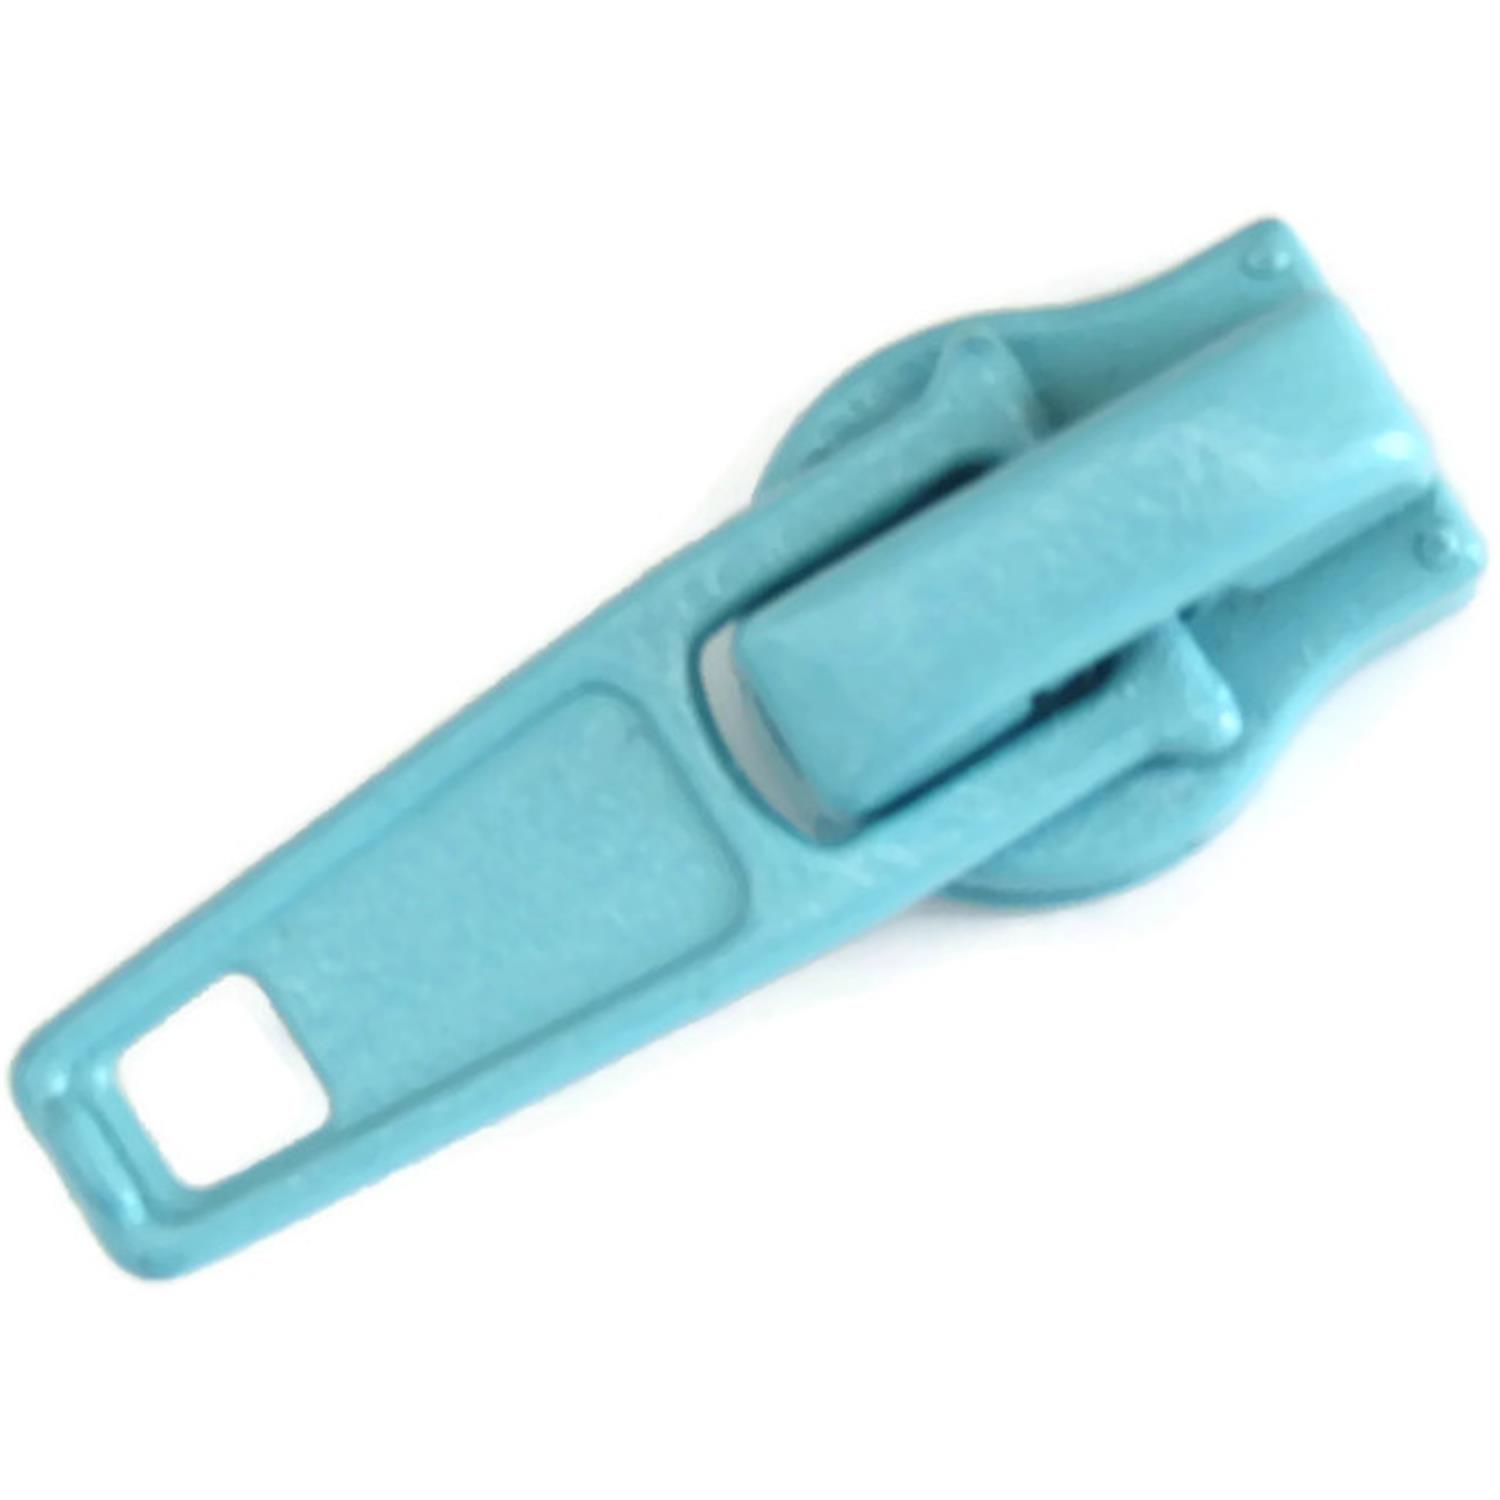 Autolock Schieber für Endlosreißverschluss 5mm, 42 Farben 76 - aqua